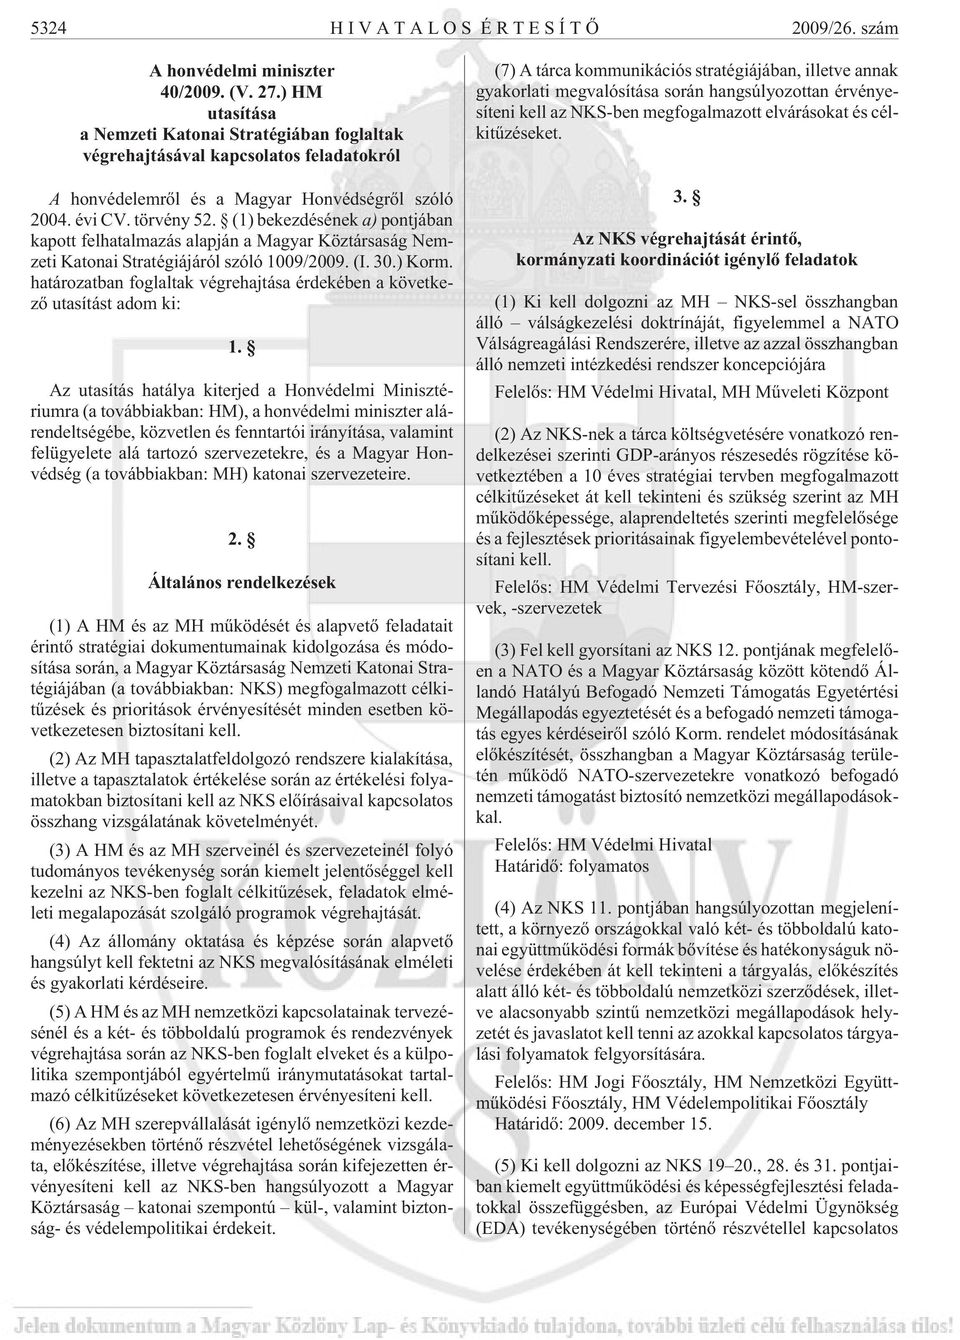 (1) bekezdésének a) pontjában kapott felhatalmazás alapján a Magyar Köztársaság Nemzeti Katonai Stratégiájáról szóló 1009/2009. (I. 30.) Korm.